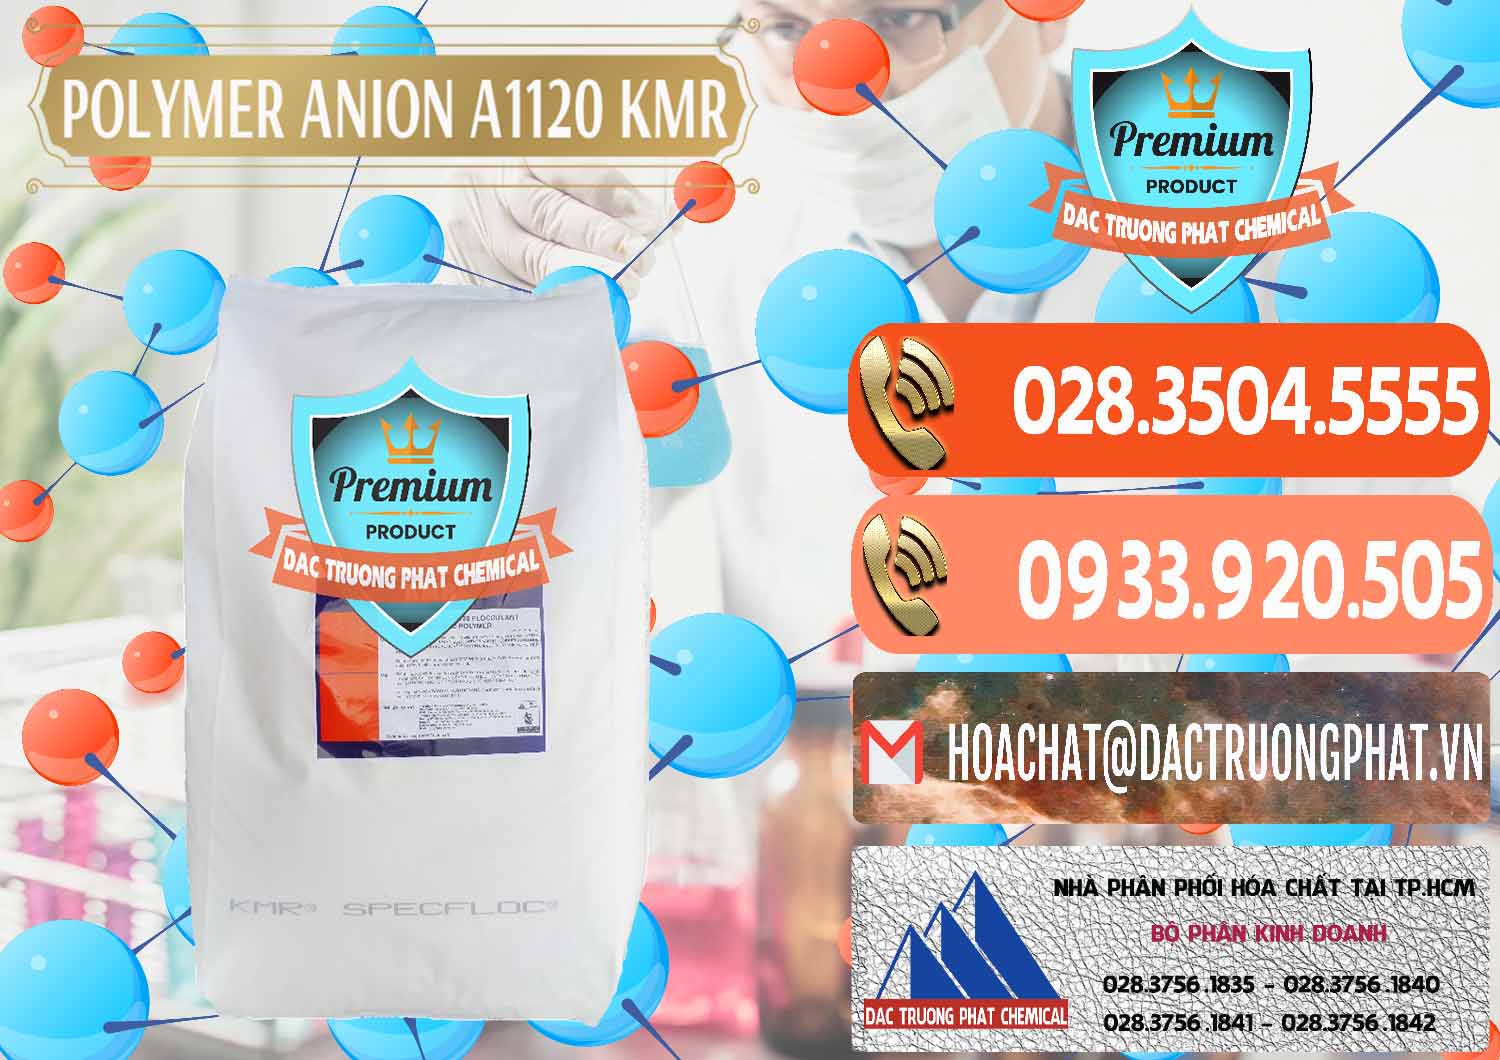 Nơi chuyên bán _ cung cấp Polymer Anion A1120 - KMR Anh Quốc England - 0119 - Công ty kinh doanh và phân phối hóa chất tại TP.HCM - hoachatmientay.com